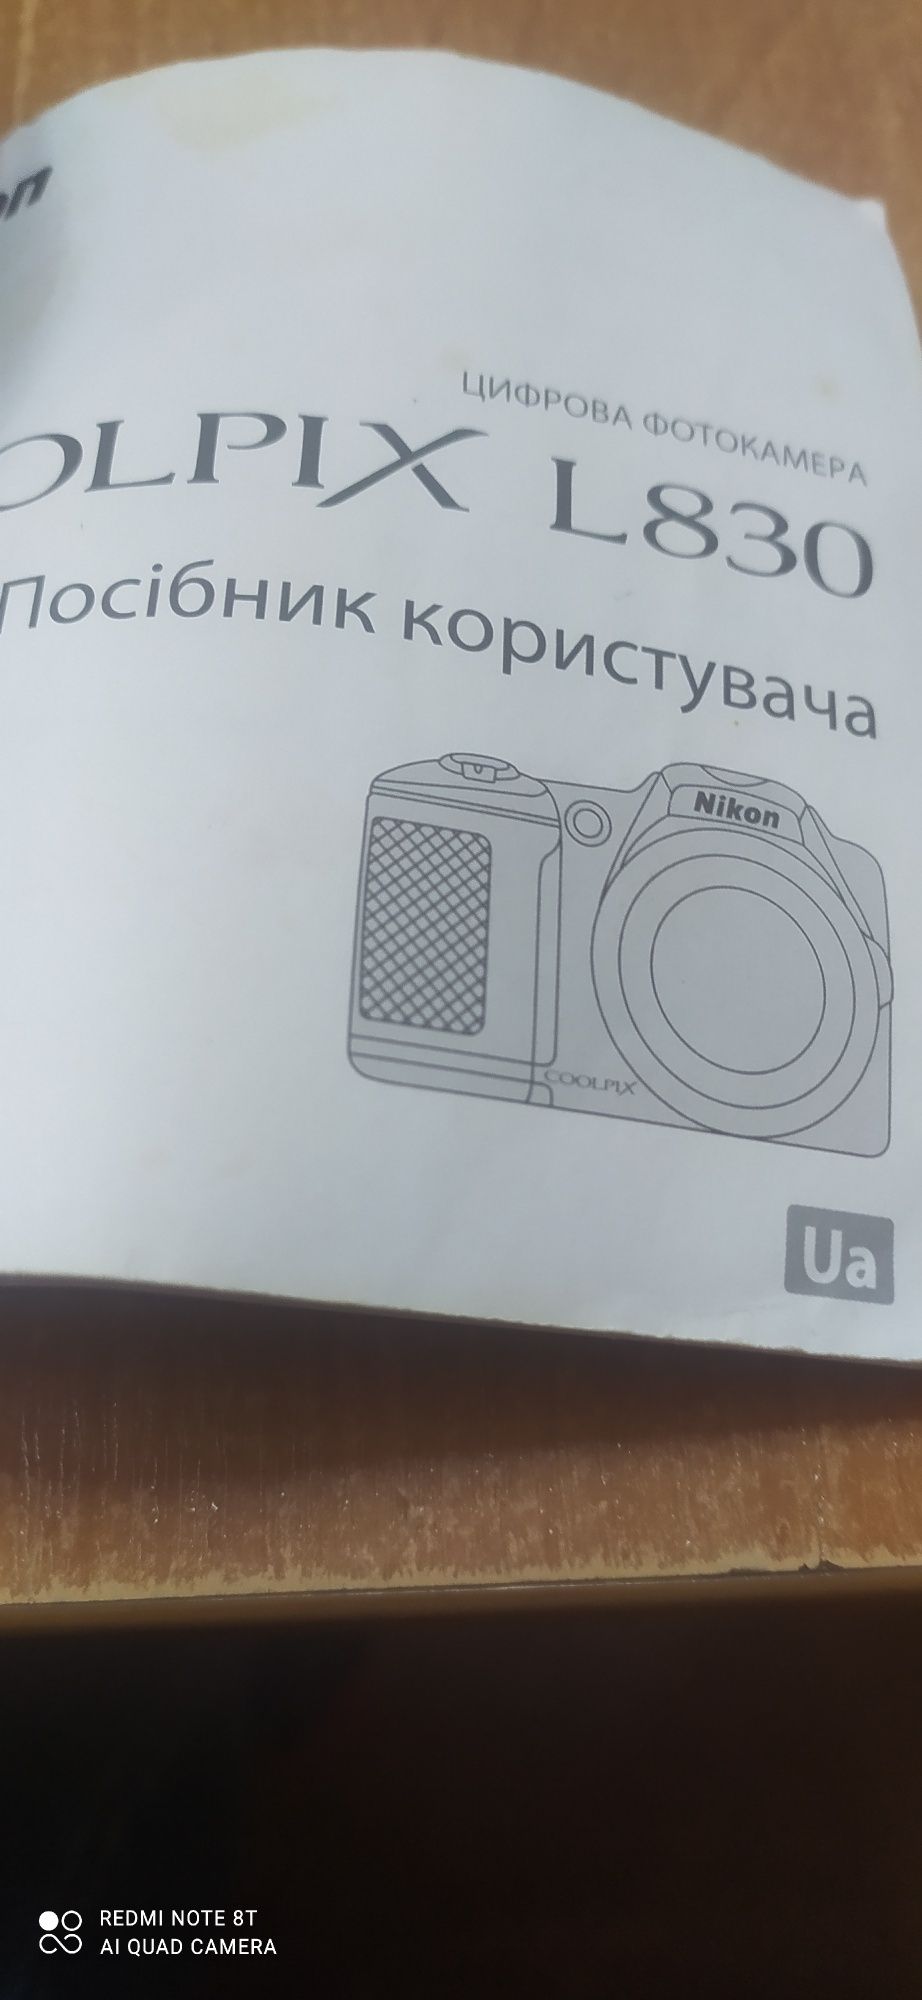 Nikon Coolpix D830